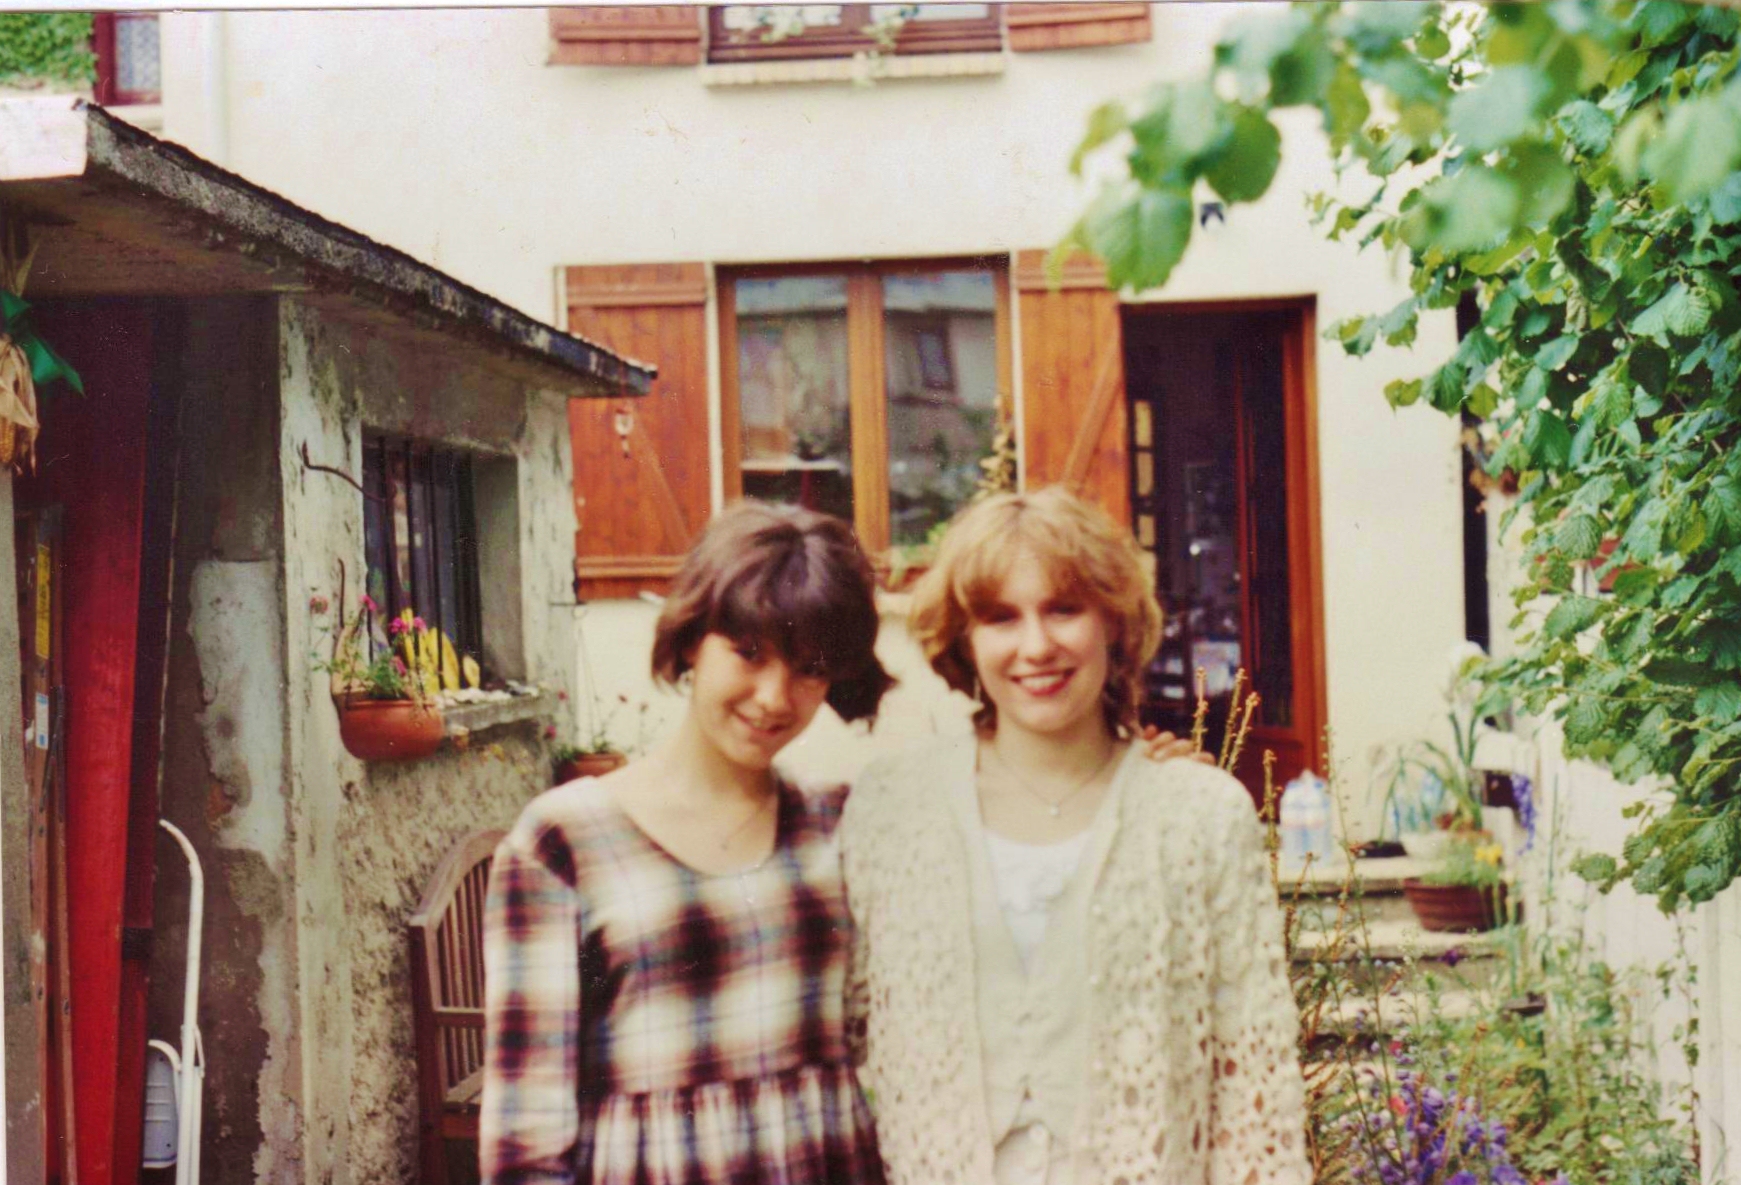 Sasha and sister in Paris